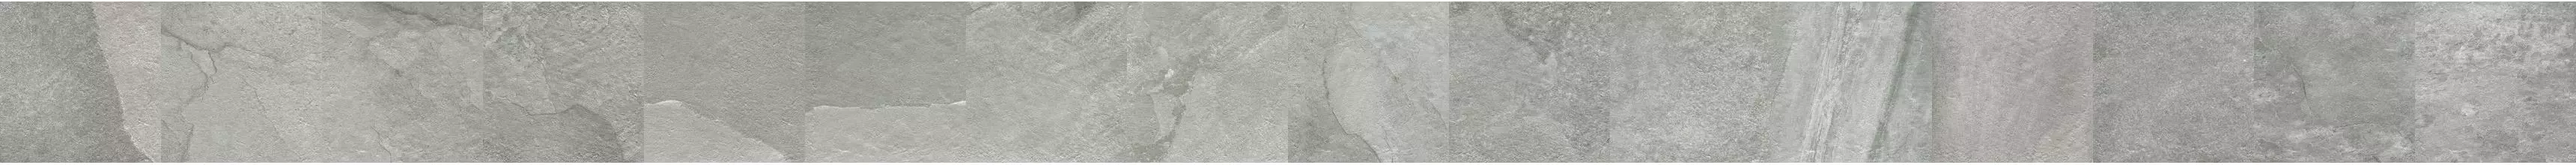 Напольная плитка «Ibero» Riverstone Pav 43x43  Grey